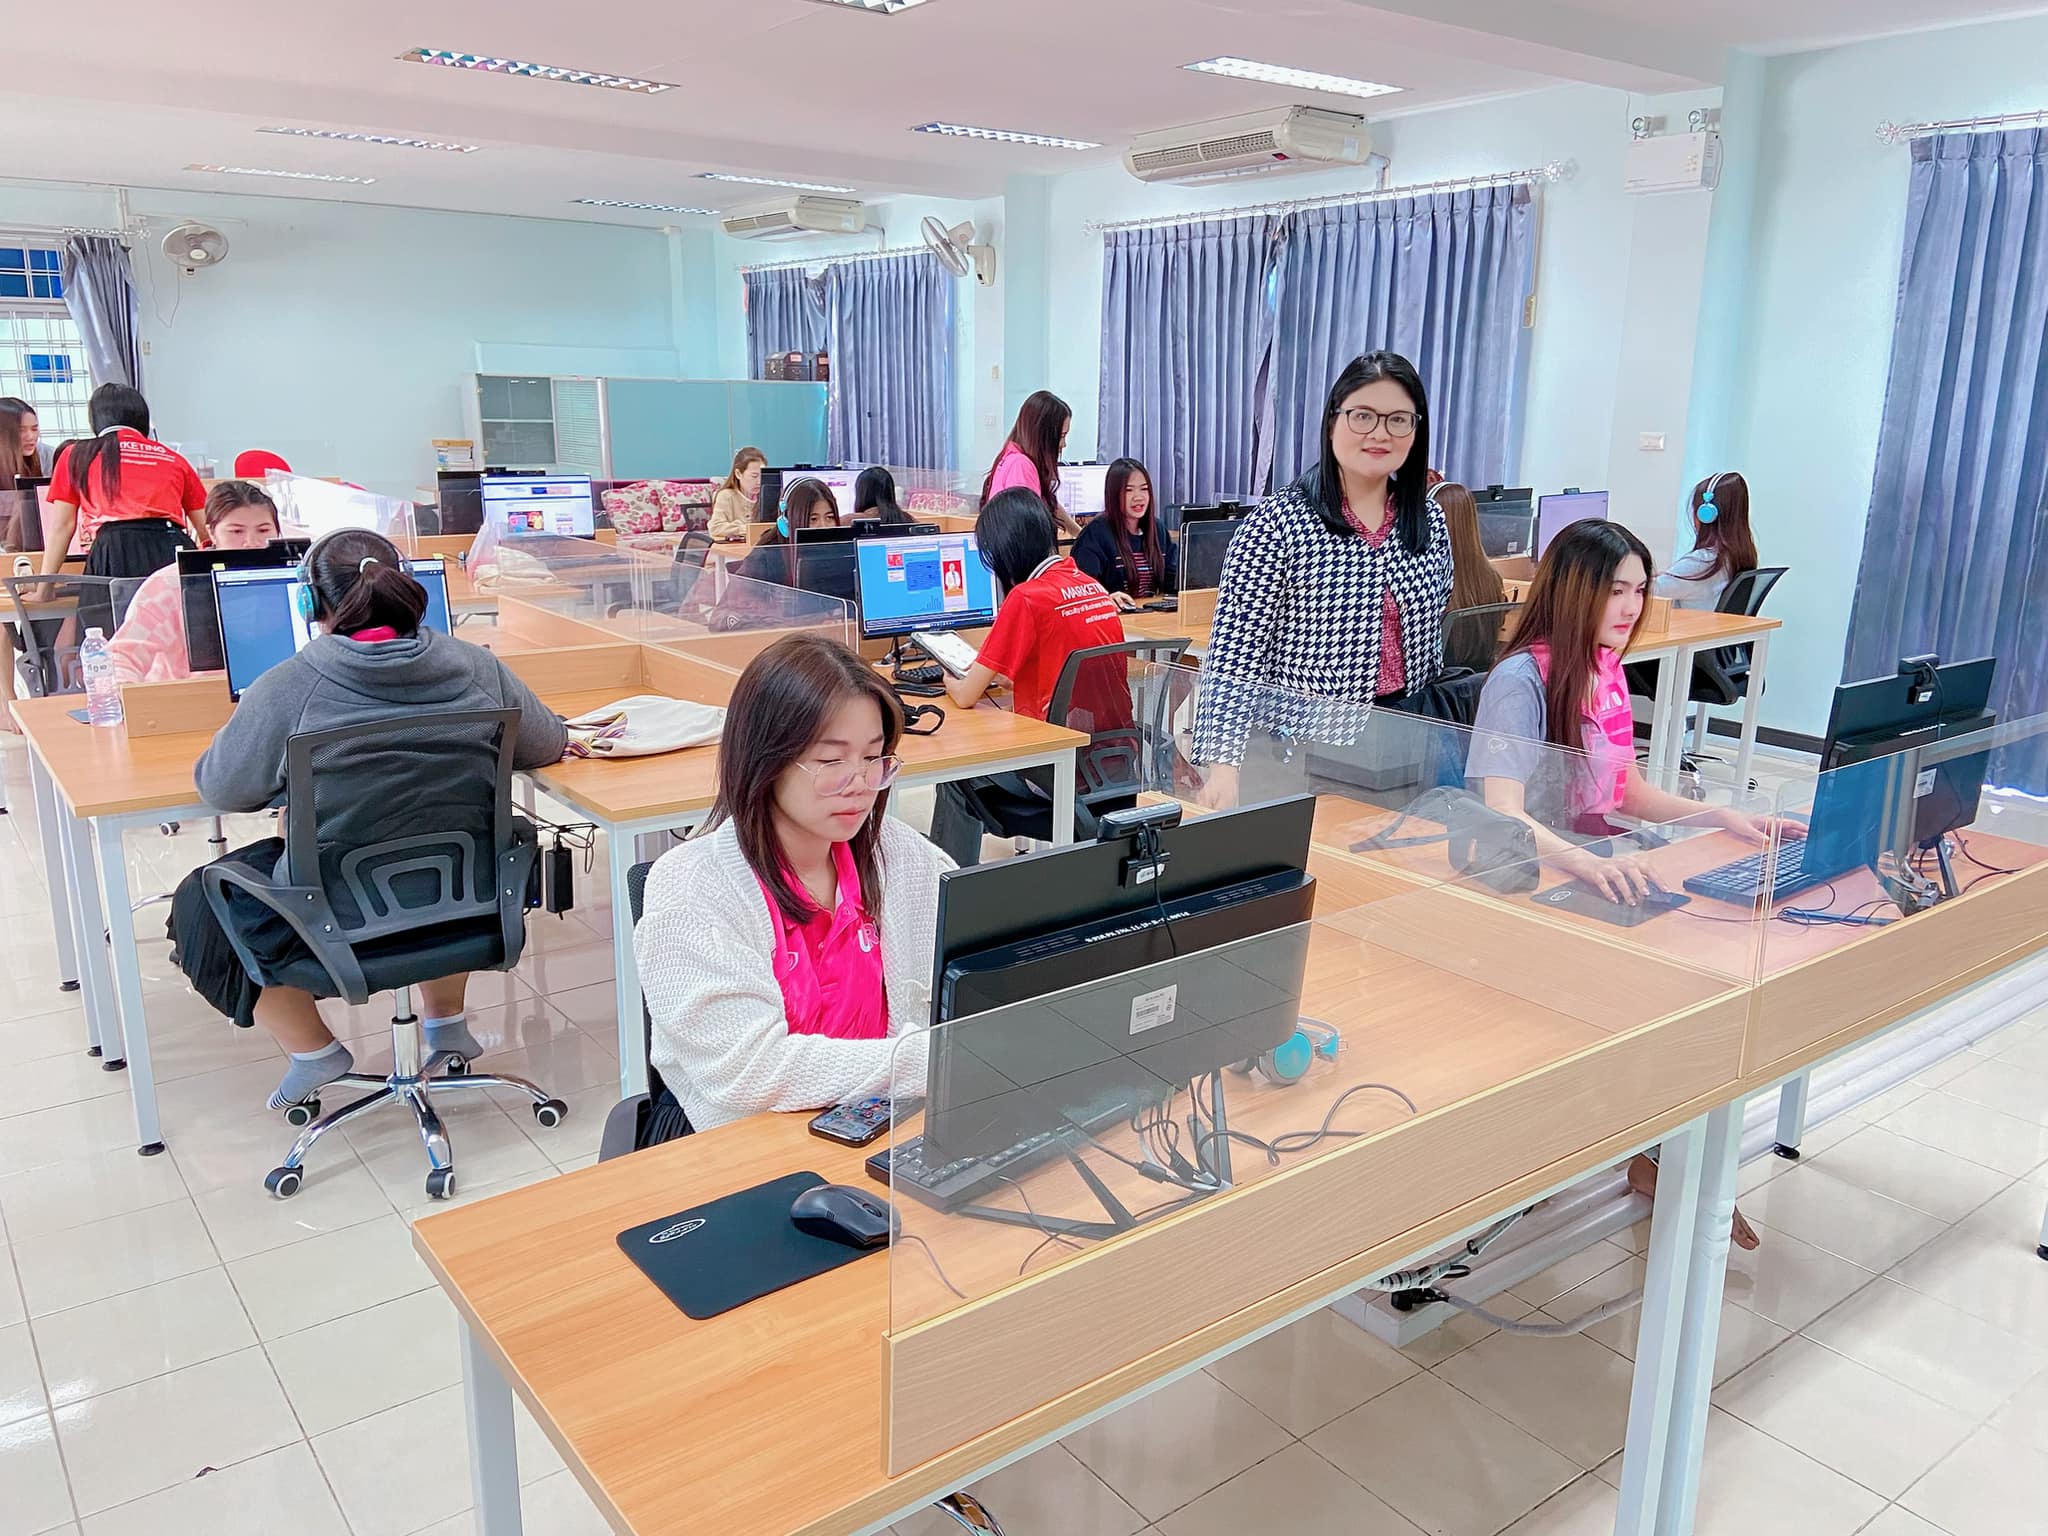 วันอังคารที่ 28 พฤศจิกายน 2566 ห้องสมุด คณะบริหารธุรกิจและการจัดการ ให้บริการ ห้องศูนย์การเรียนรู้ทักษะภาษา (Language Learning center) เพื่อใช้ในกระบวนการการจัดการเรียนการสอน   รายวิชา : การตลาดสำหรับธุรกิจชุมชน 